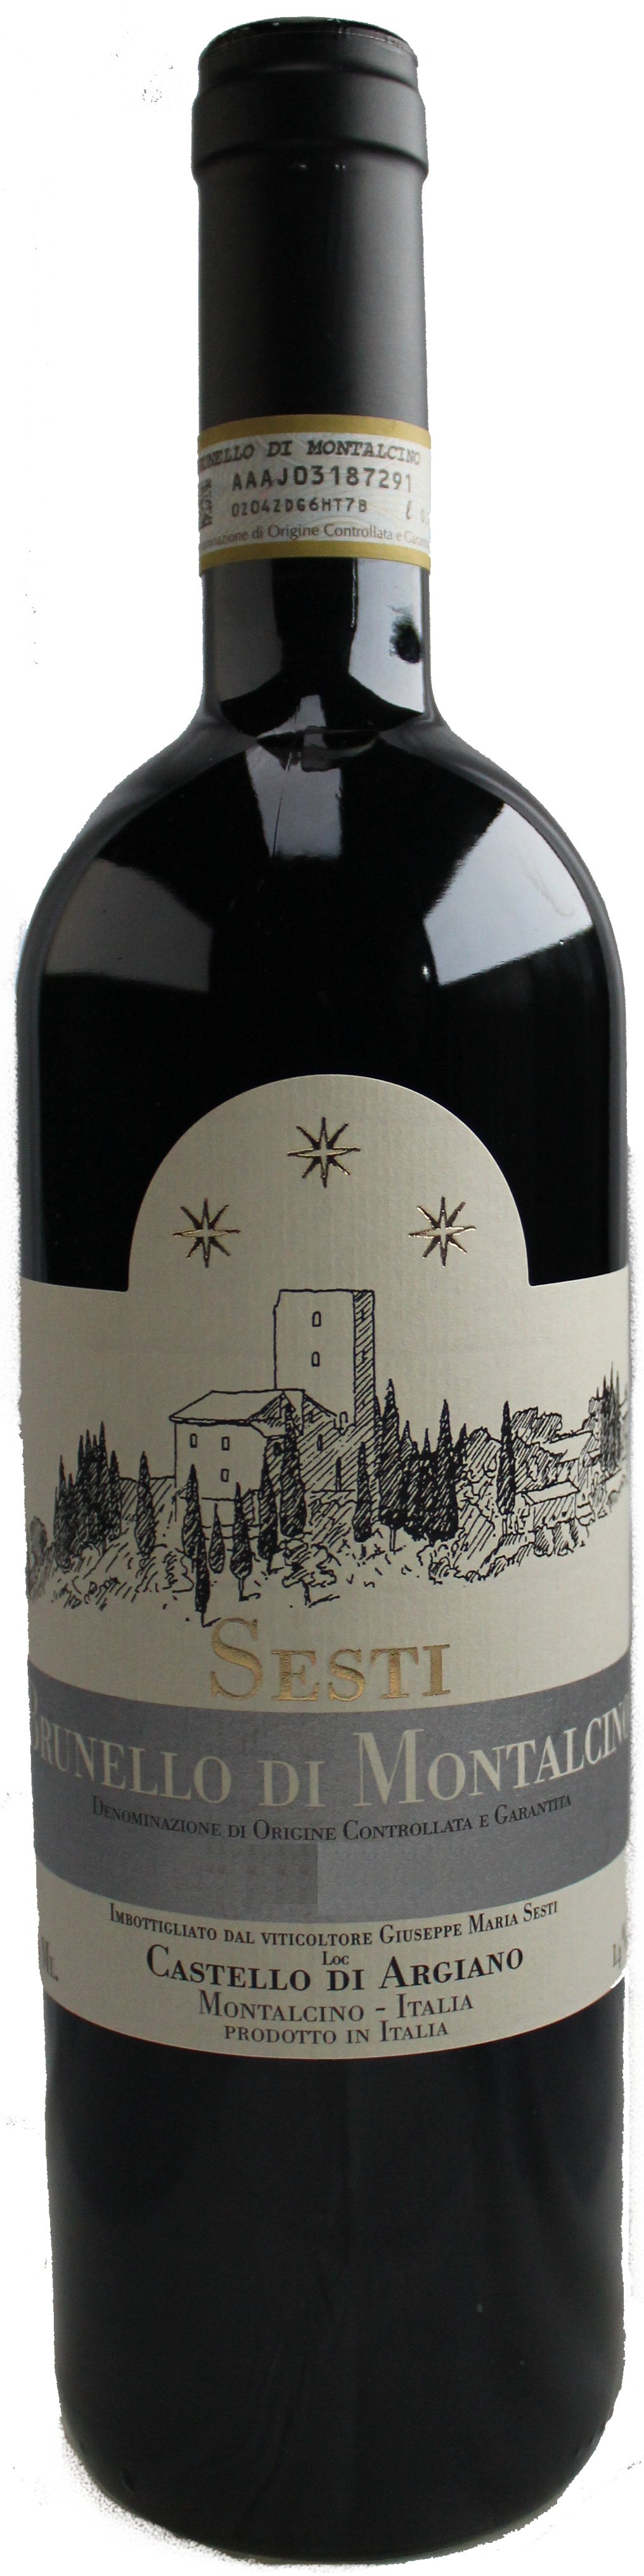 Bottle shot of 2008 Brunello di Montalcino